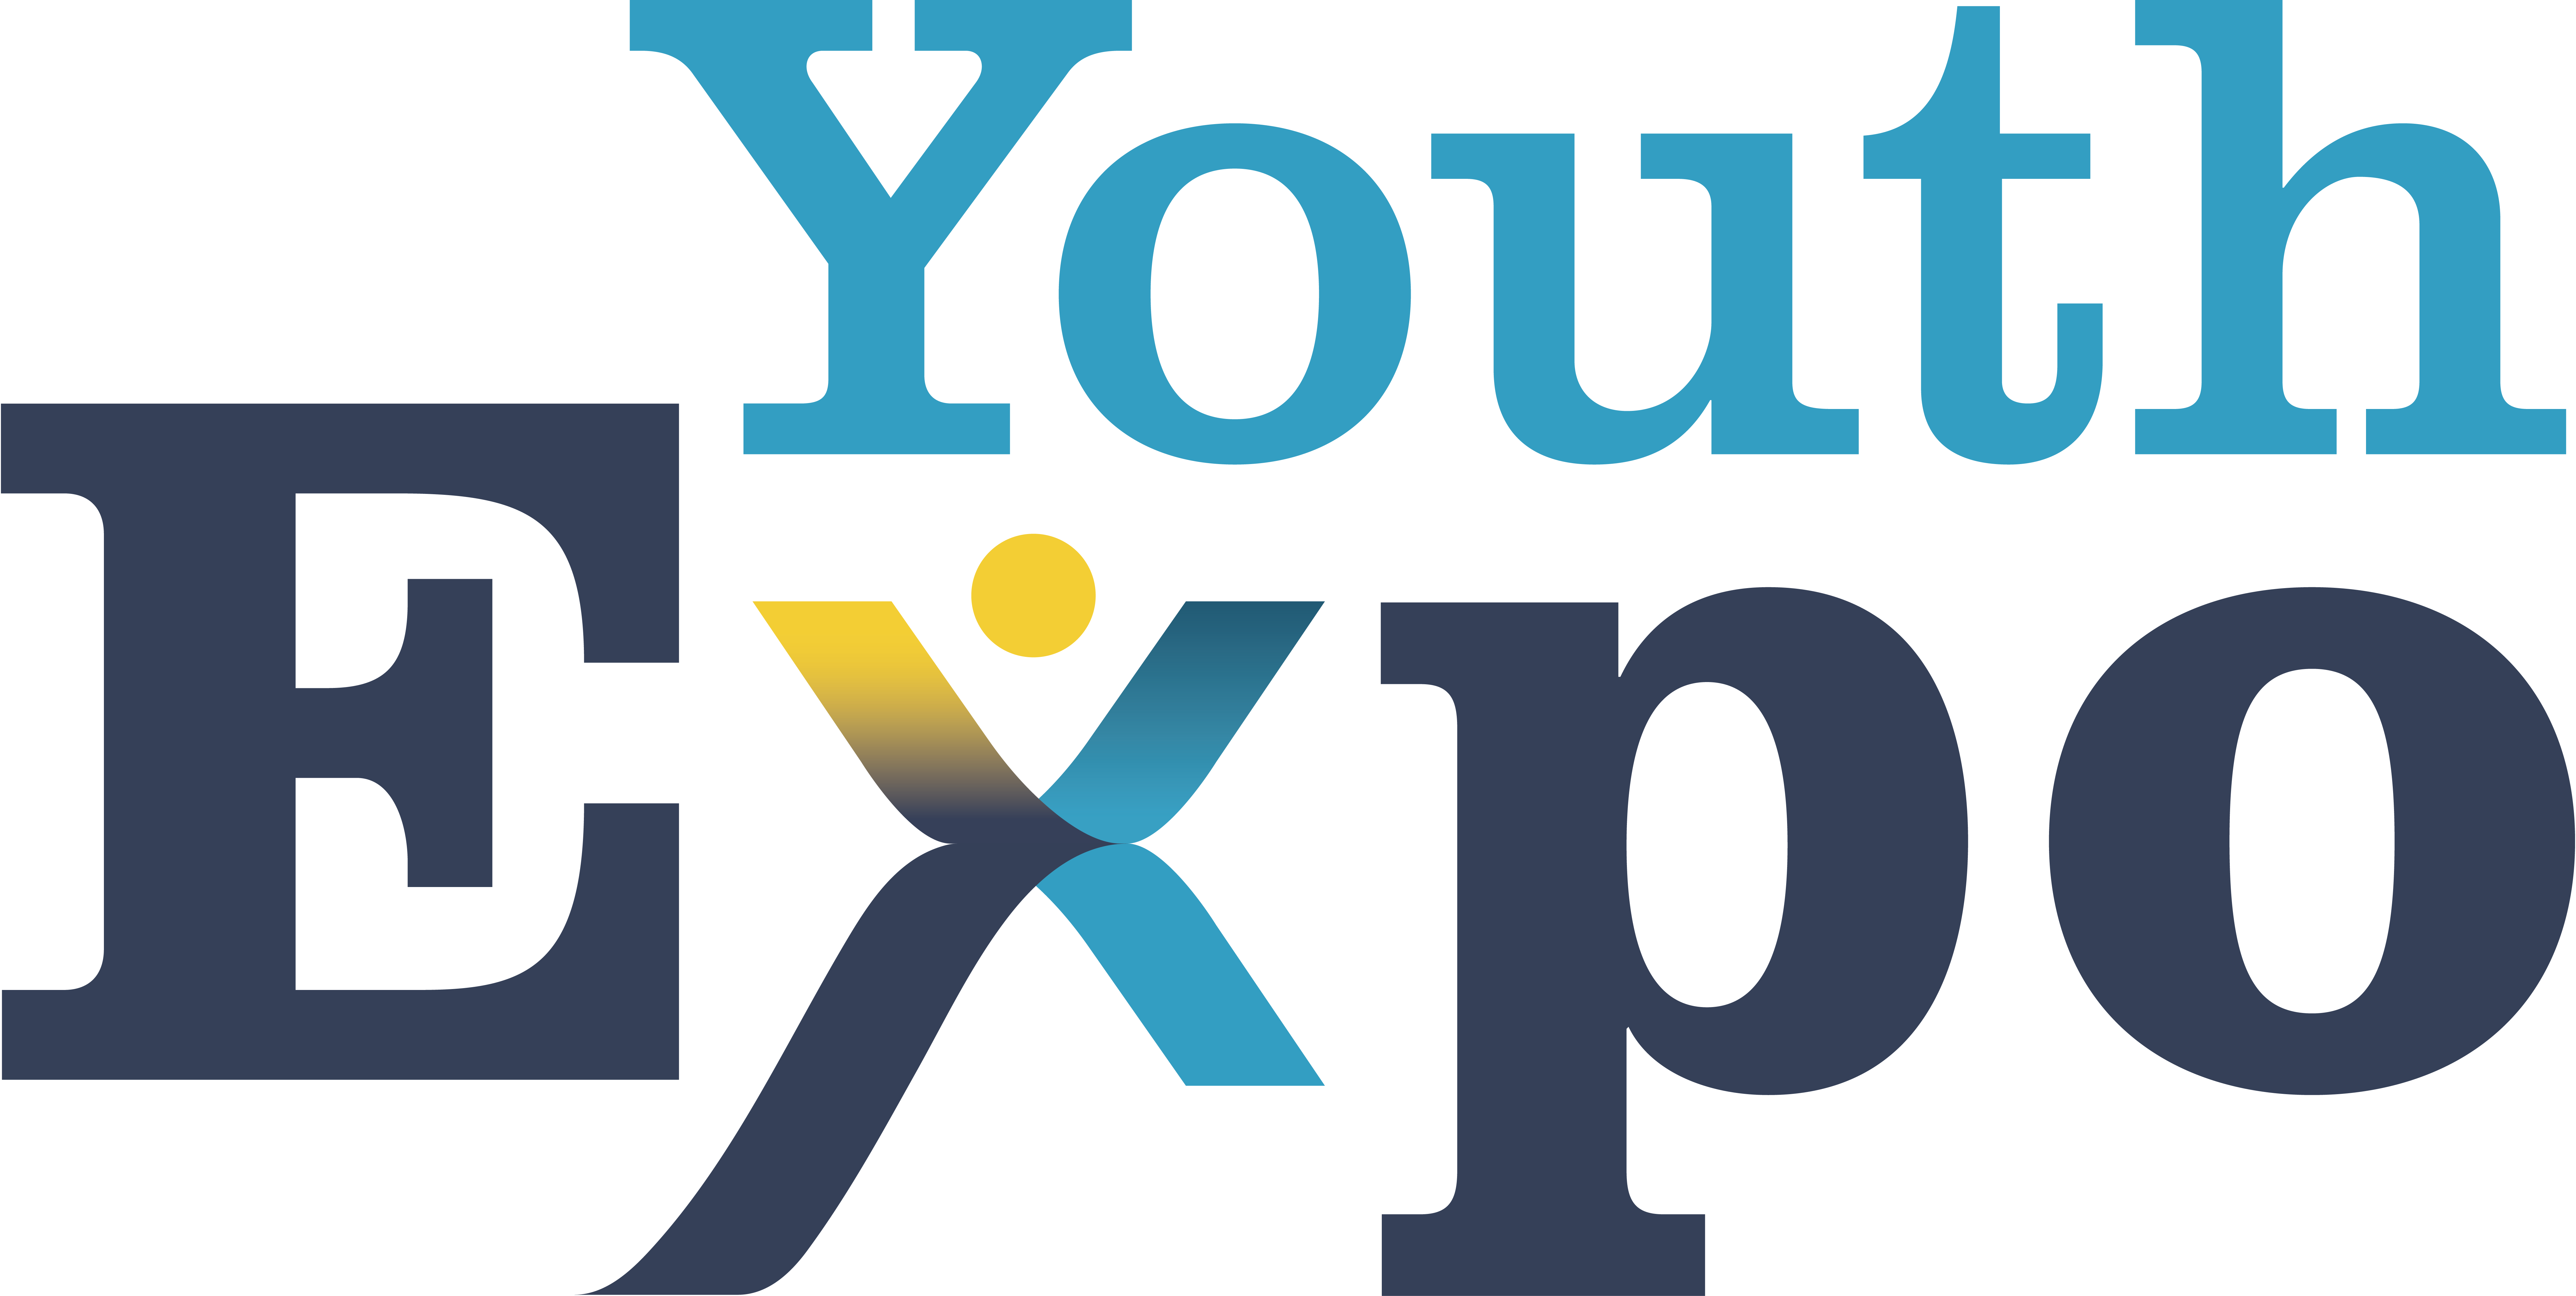 2019 Youth Expo Ontario Council for International CooperationOntario